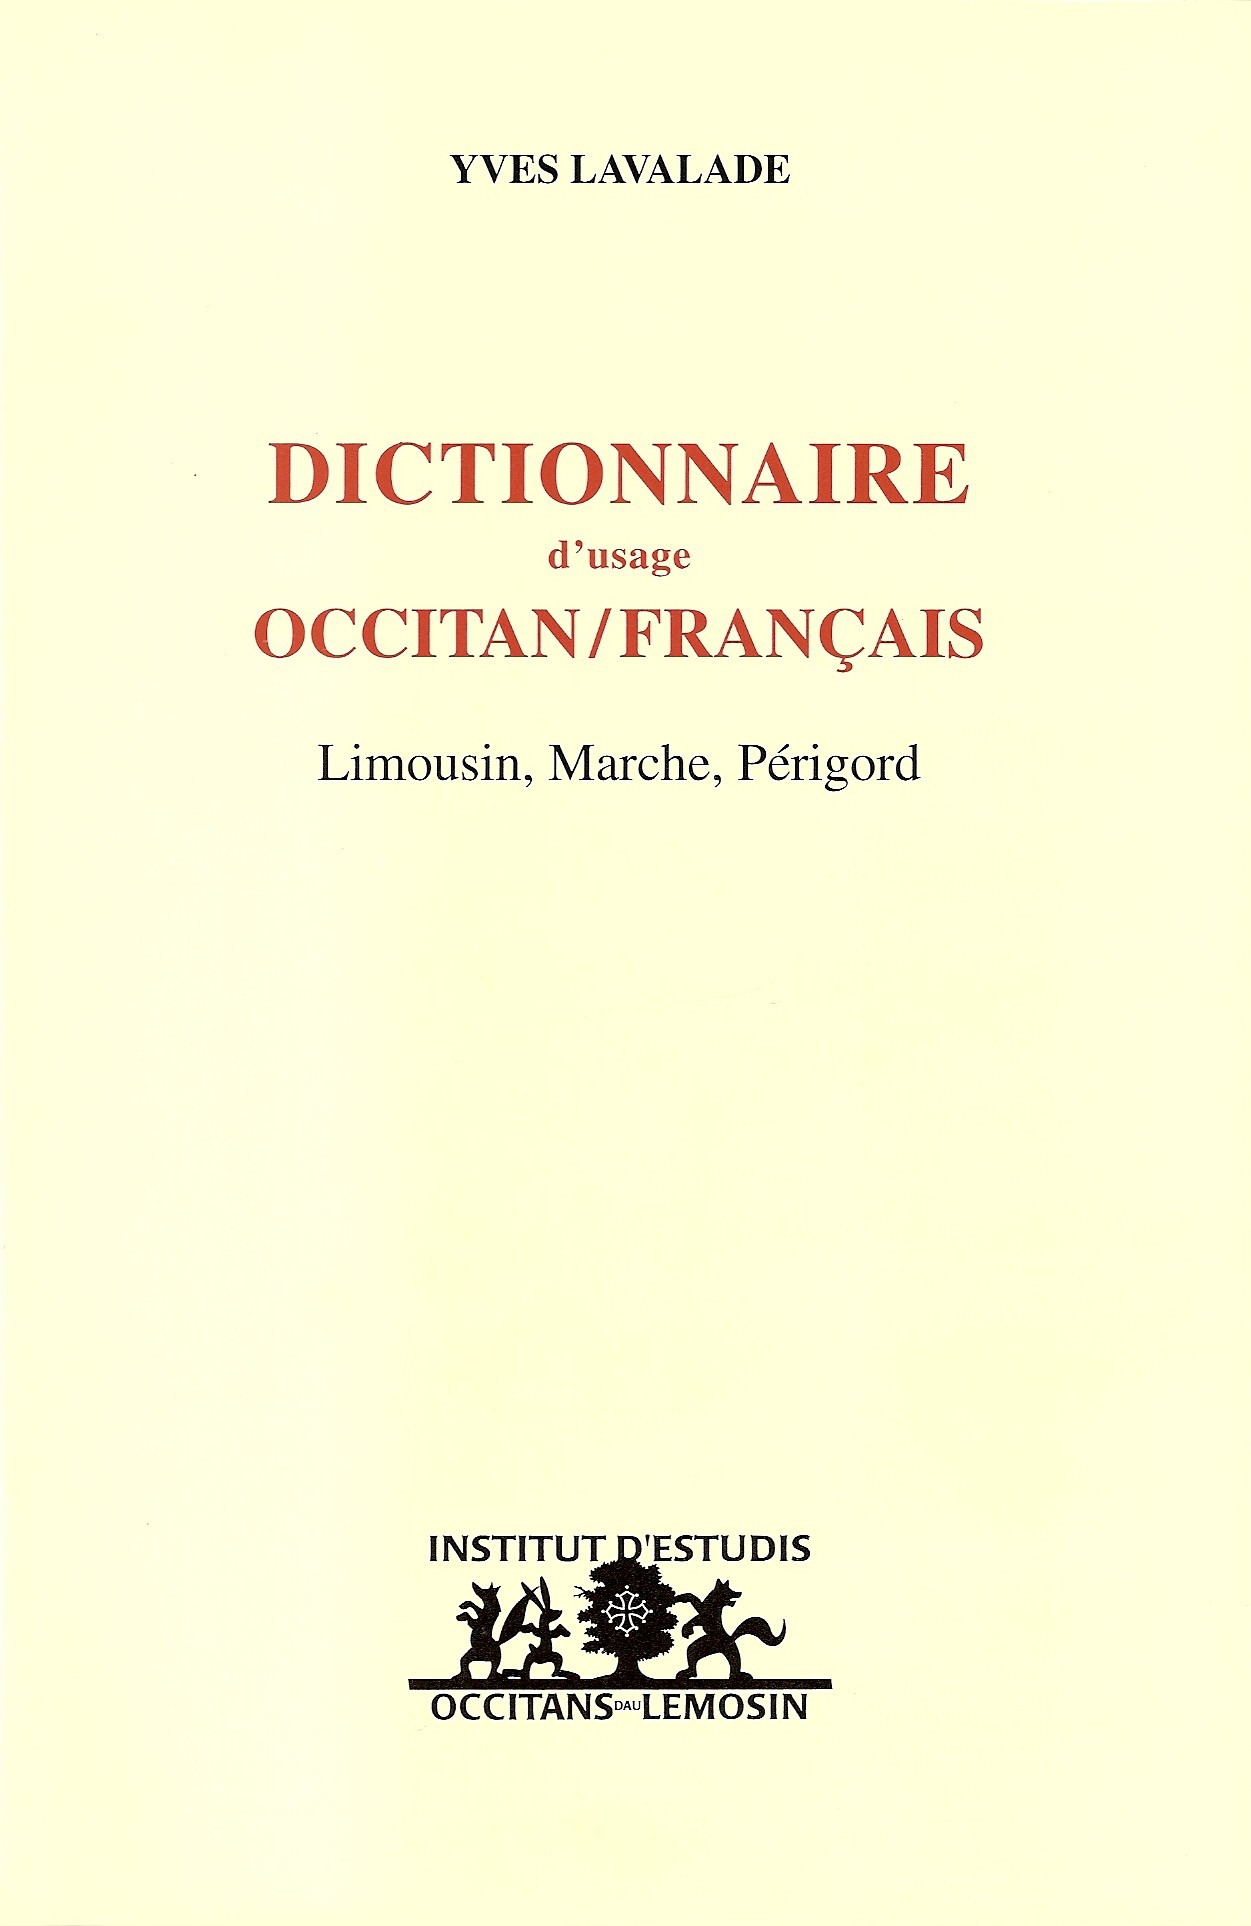 Dictionnaire d'usage OCCITAN/FRANCAIS : Limousin, Marche, Périgord